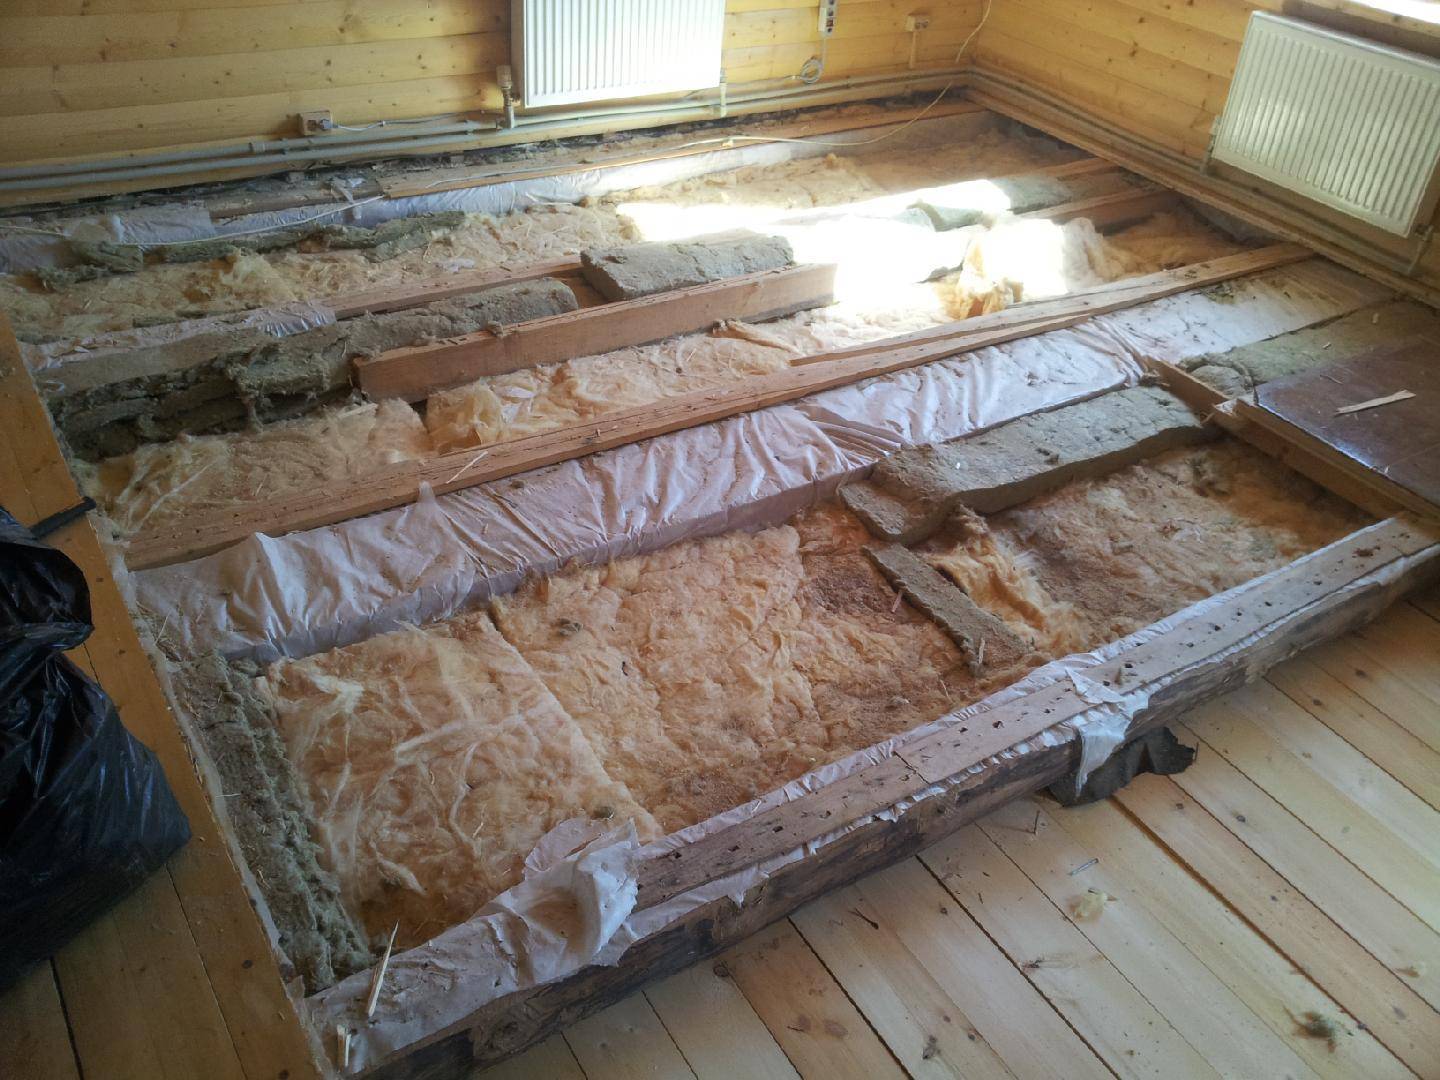 Как утеплить пол на даче в деревянном частном доме: пошаговые инструкции